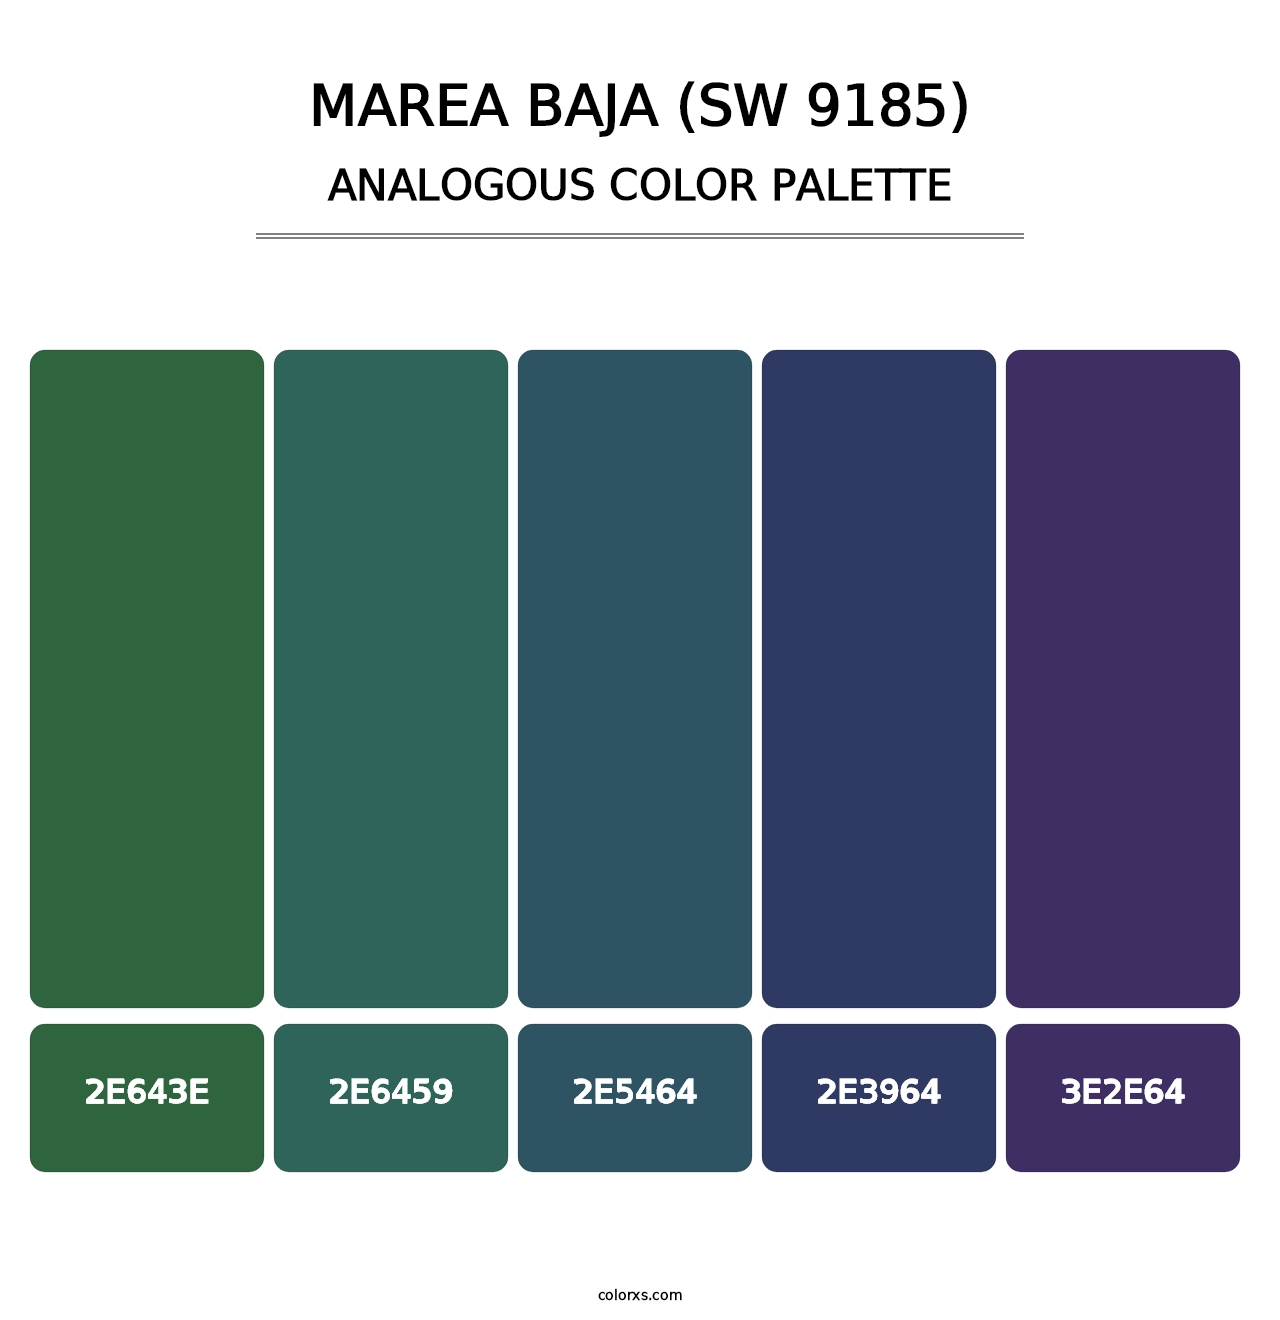 Marea Baja (SW 9185) - Analogous Color Palette